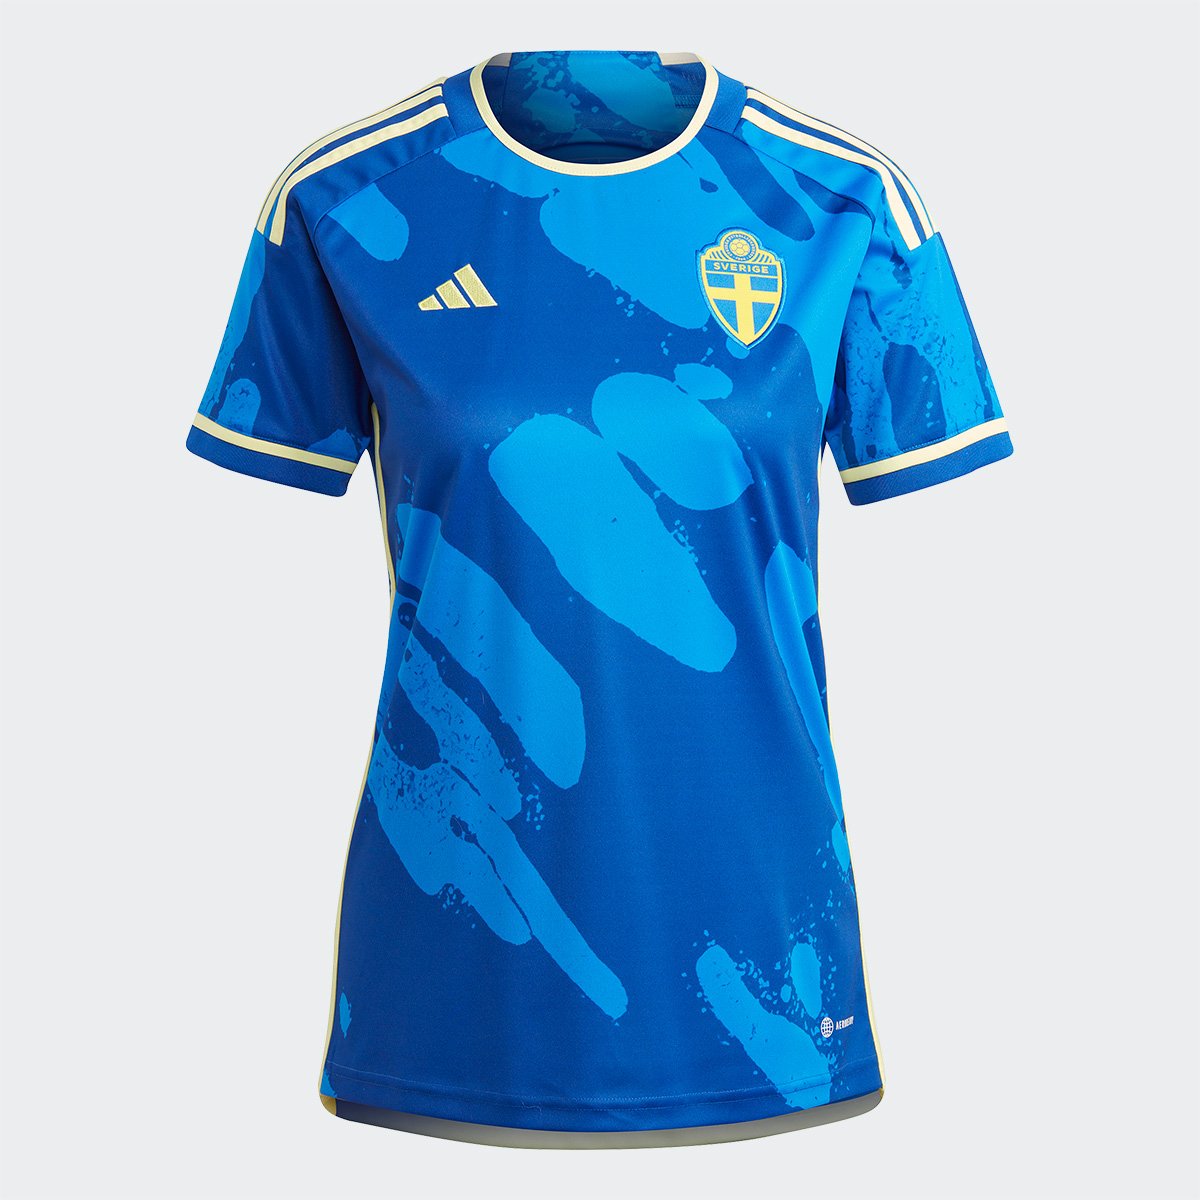 Camisa Seleção Suécia Away 23/24 s/n° Torcedor Adidas - Feminina